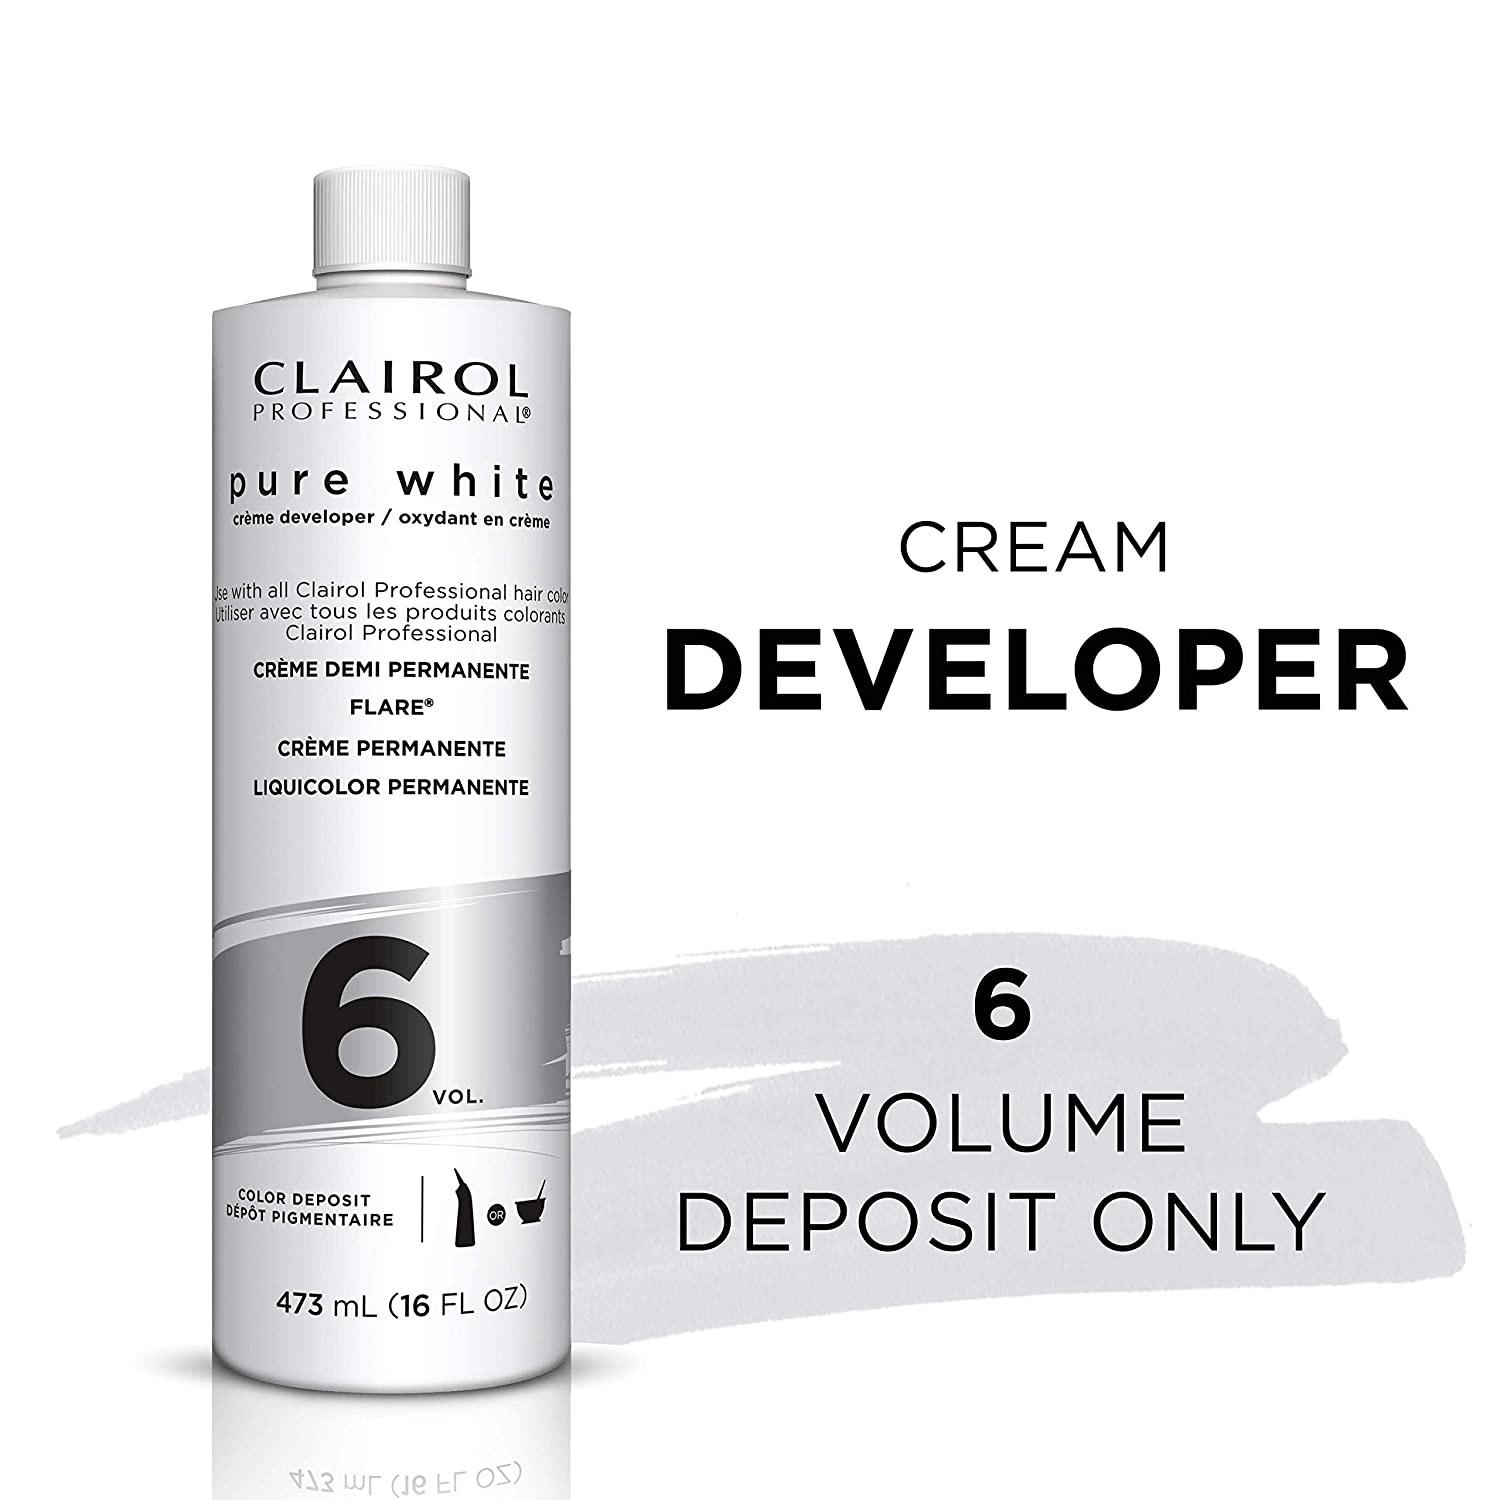 Clairol Professional Pure White 6vol Crème Developer